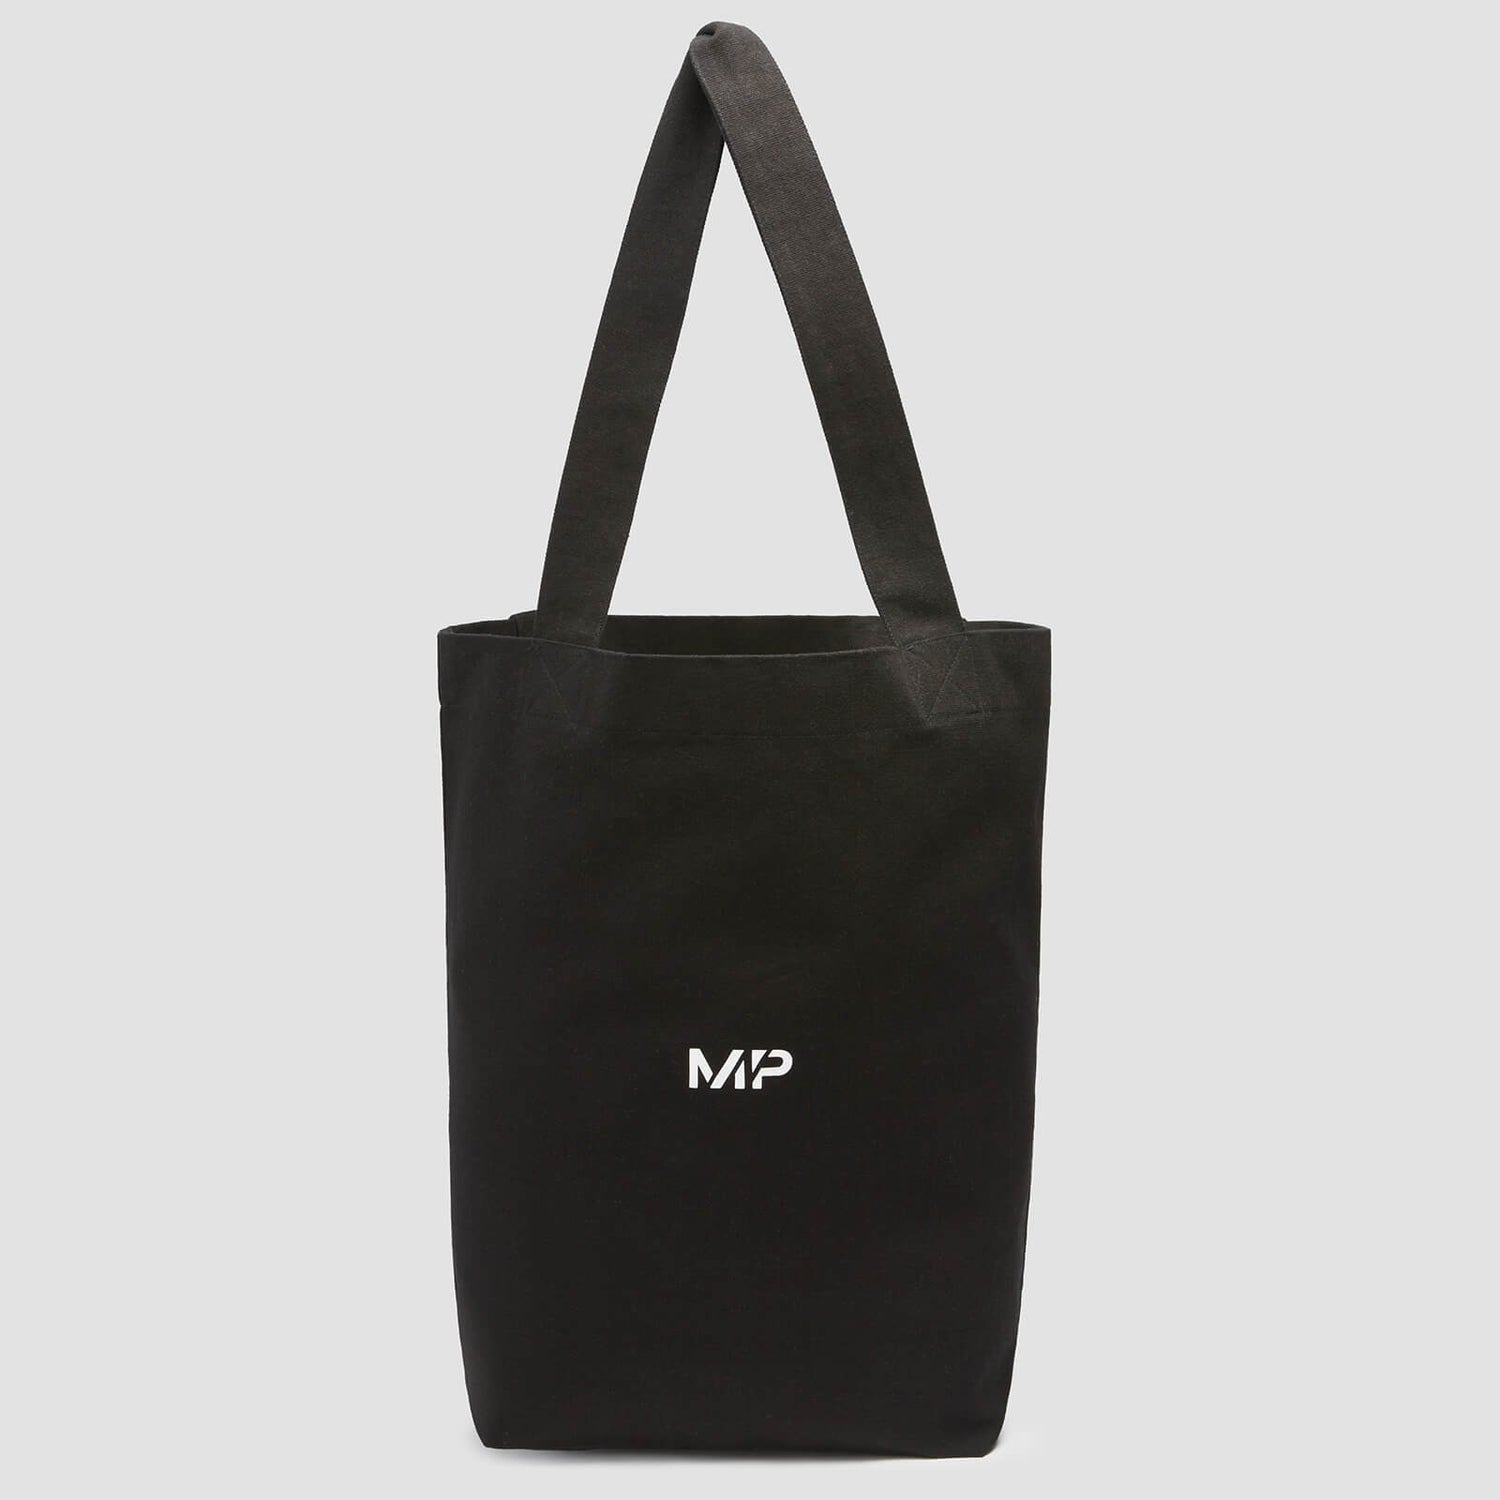 MP Canvas Tote Bag - Black